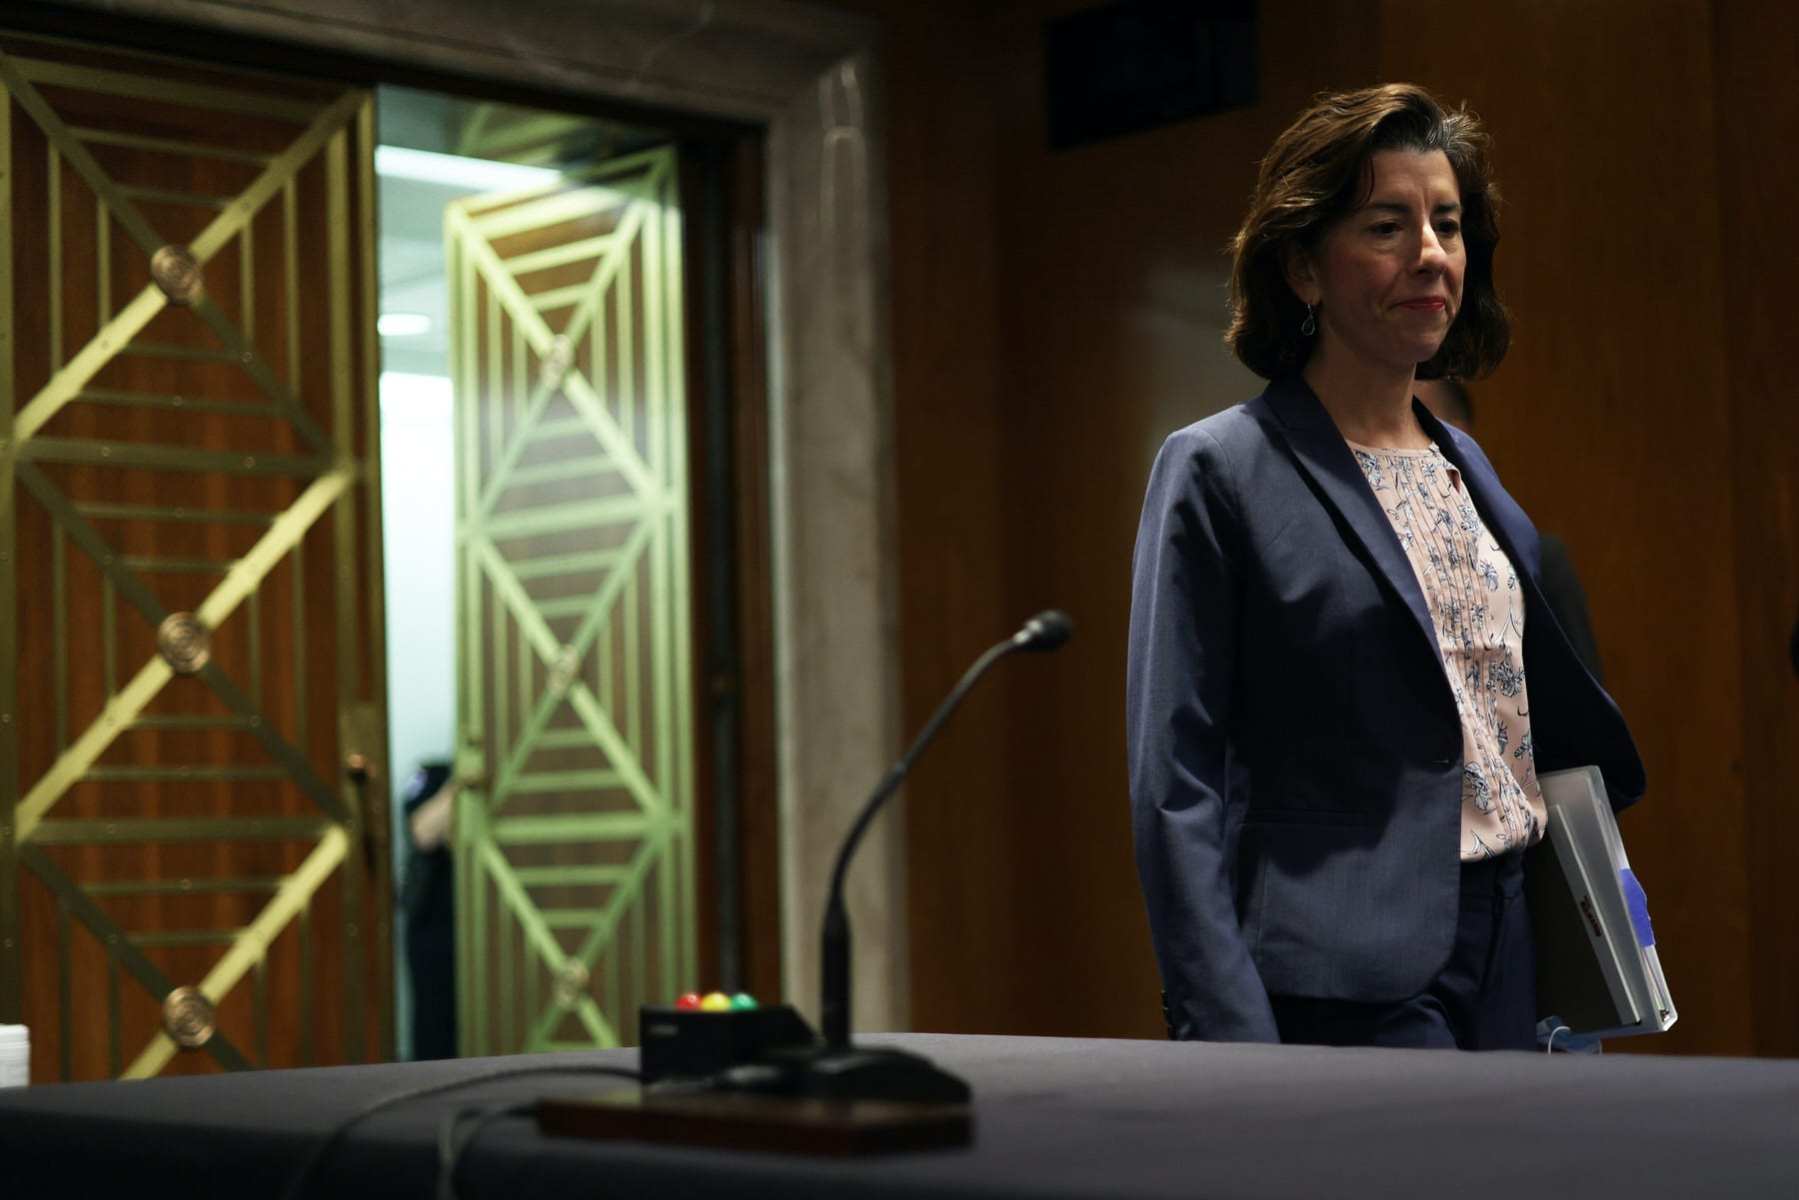 U.S. Secretary of Commerce Gina Raimondo walks into a hearing.